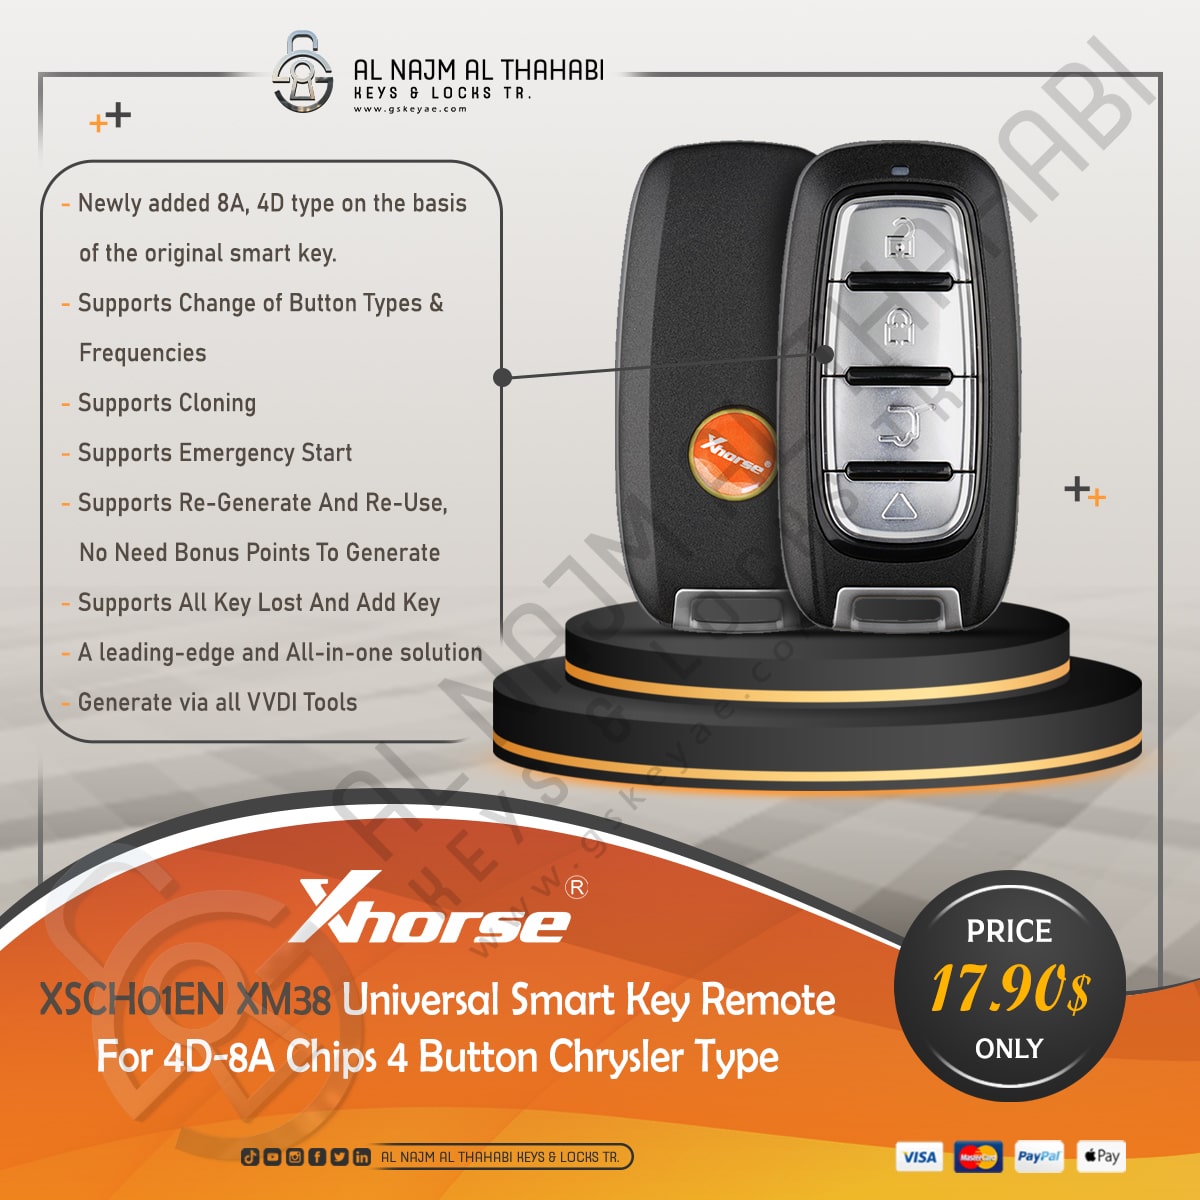 Xhorse XSCH01EN XM38 Universal Smart Key Remote 4 Button Chrysler